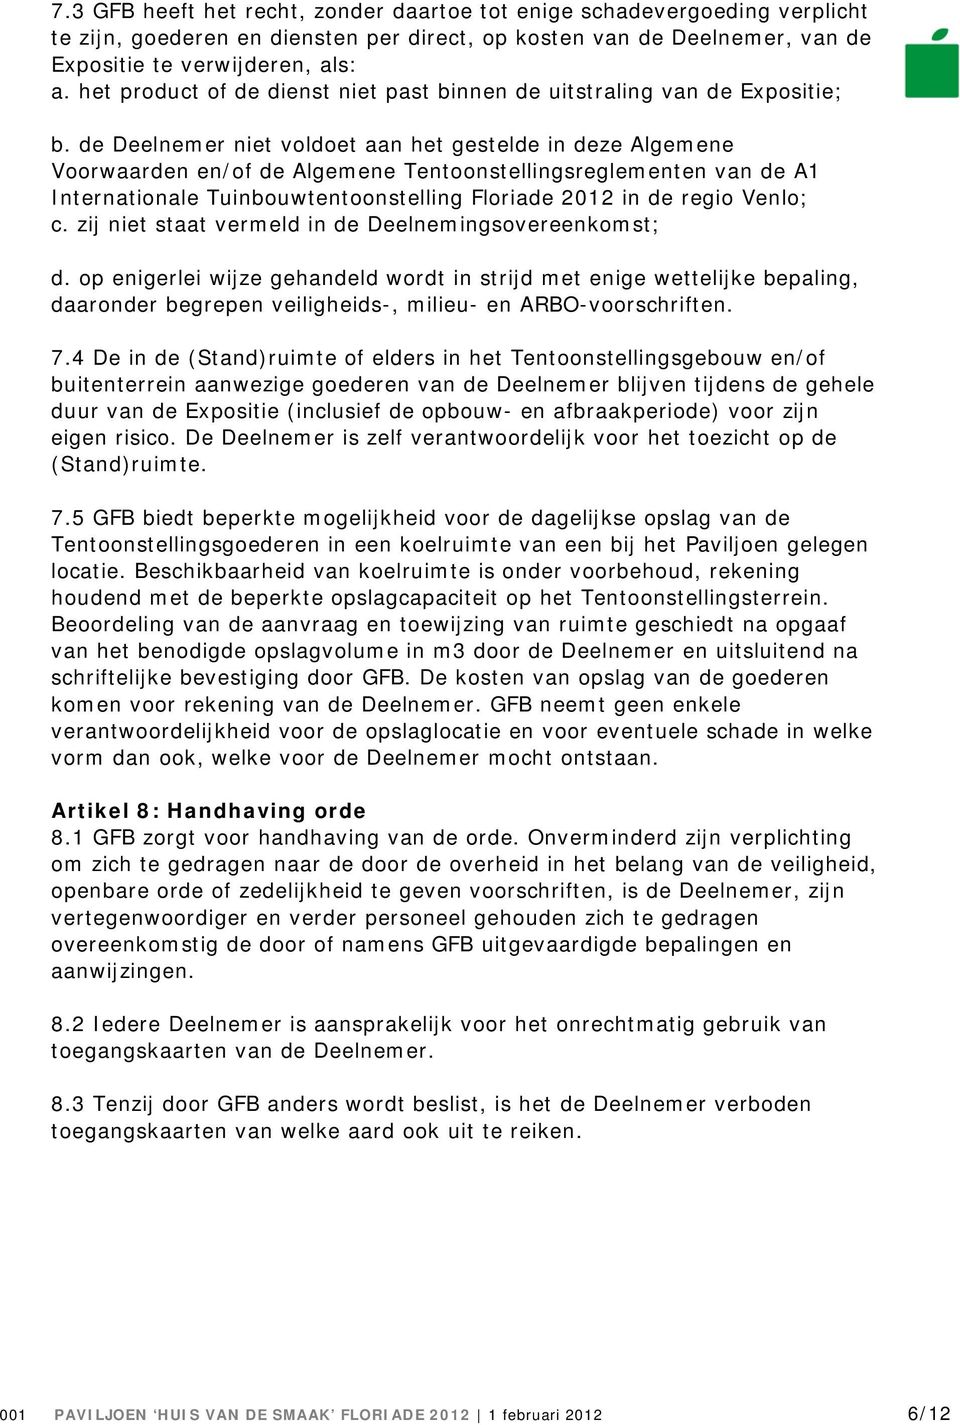 de Deelnemer niet voldoet aan het gestelde in deze Algemene Voorwaarden en/of de Algemene Tentoonstellingsreglementen van de A1 Internationale Tuinbouwtentoonstelling Floriade 2012 in de regio Venlo;